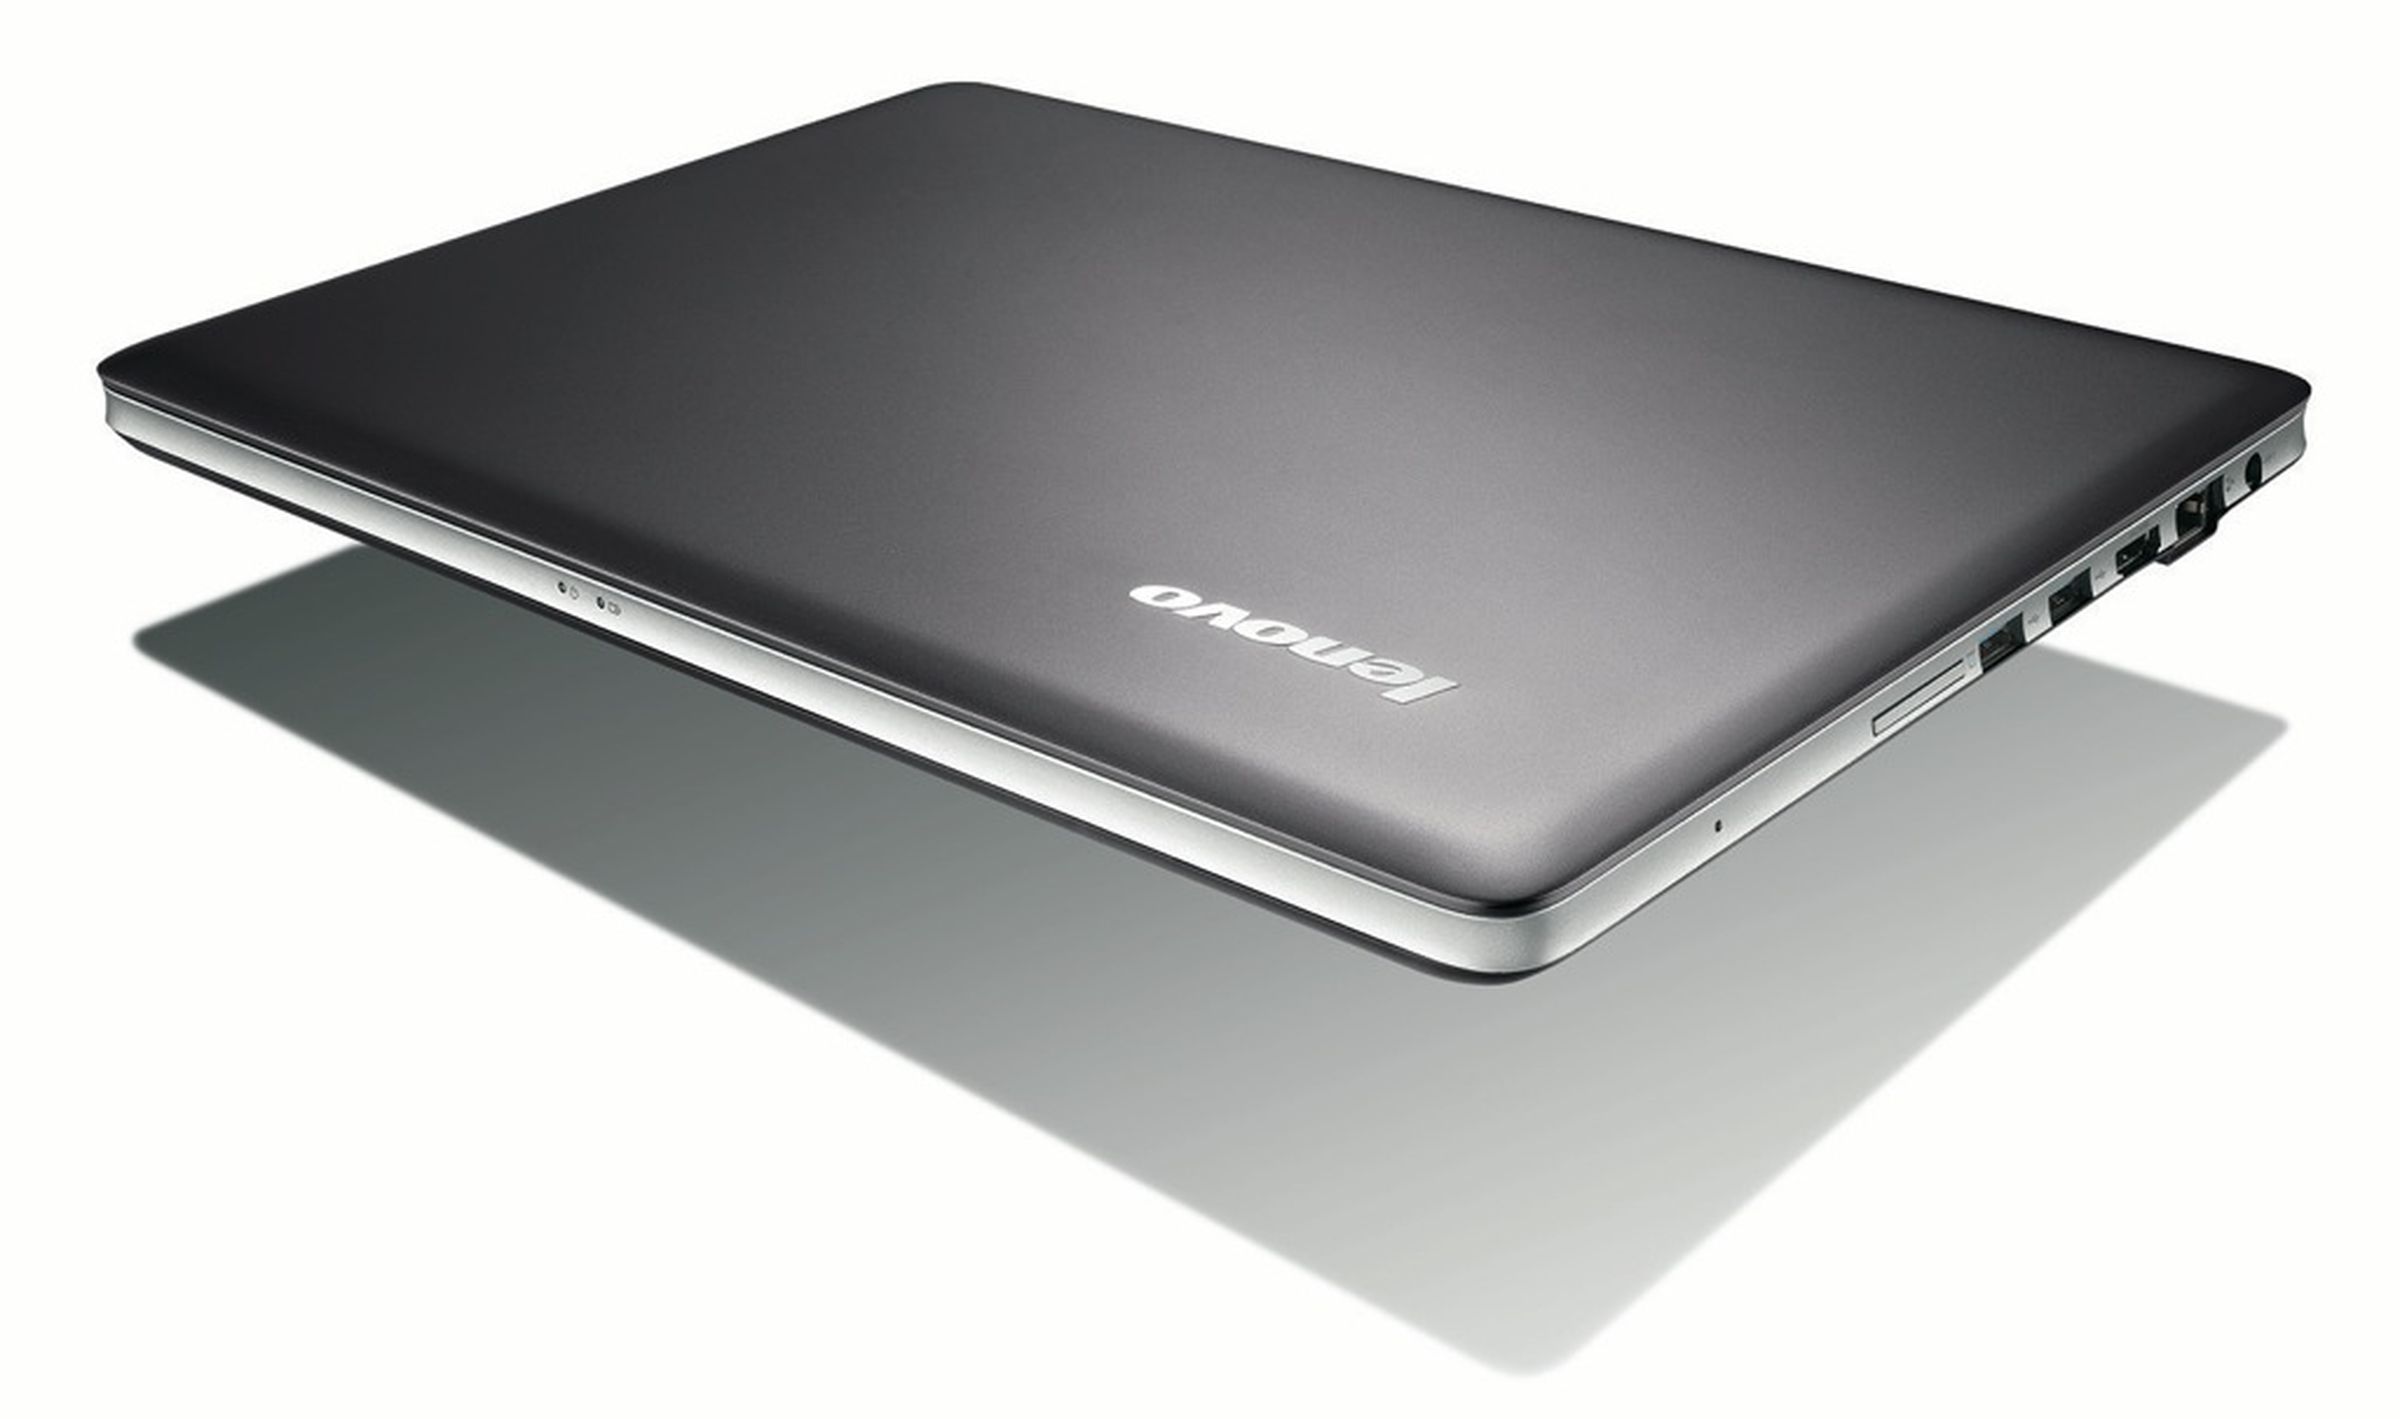 Lenovo's Z400 and Z500 Touch laptops